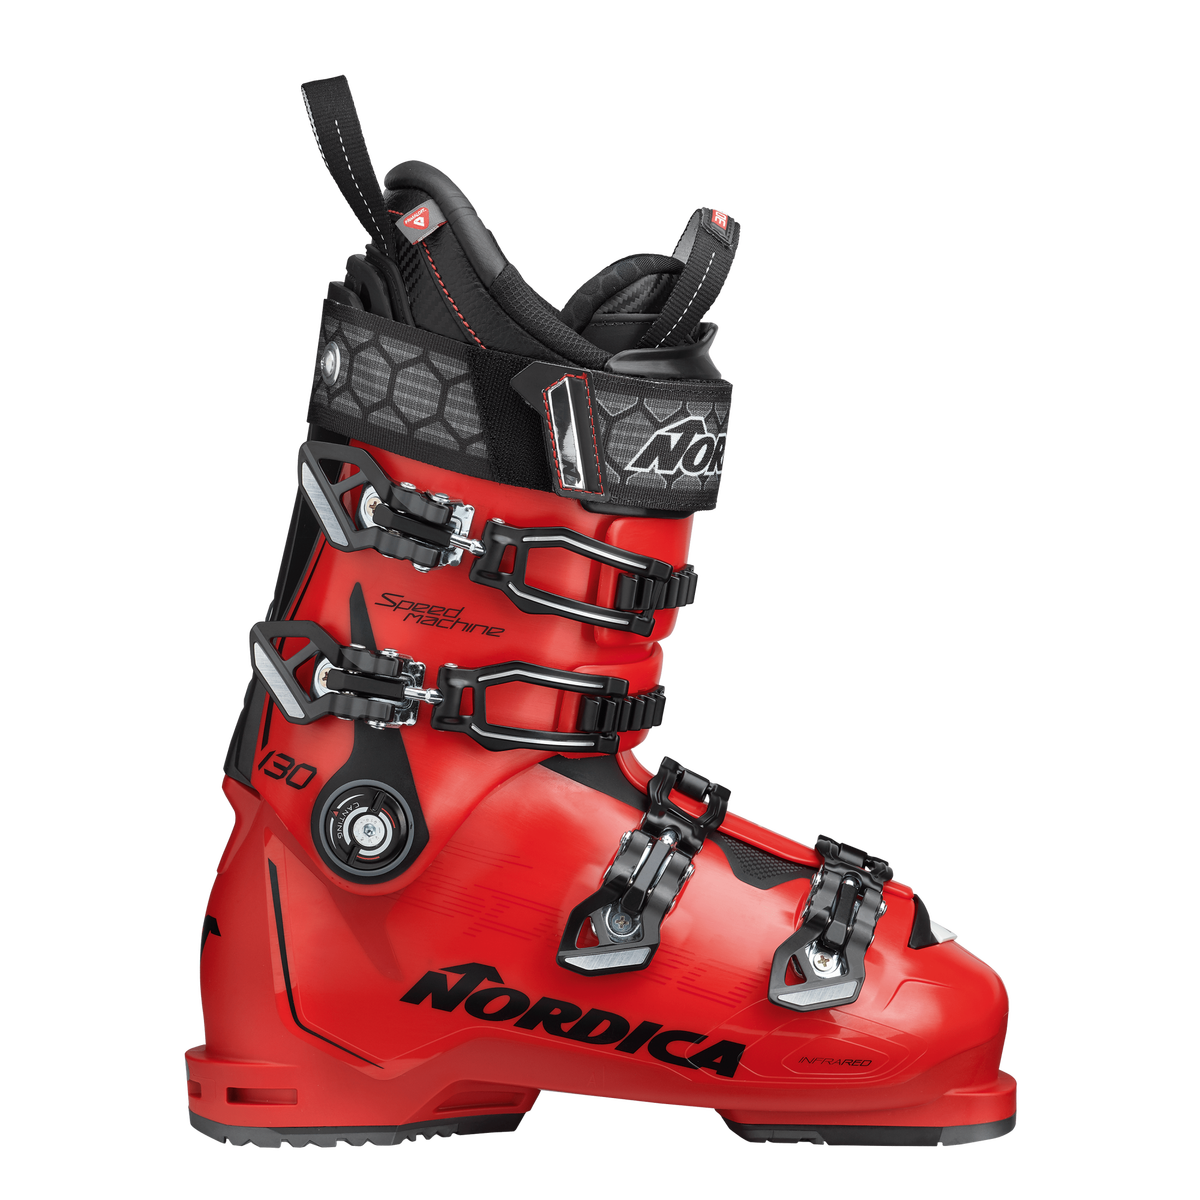 Lyžařské boty Nordica SPEEDMACHINE 130 - 280, red/black